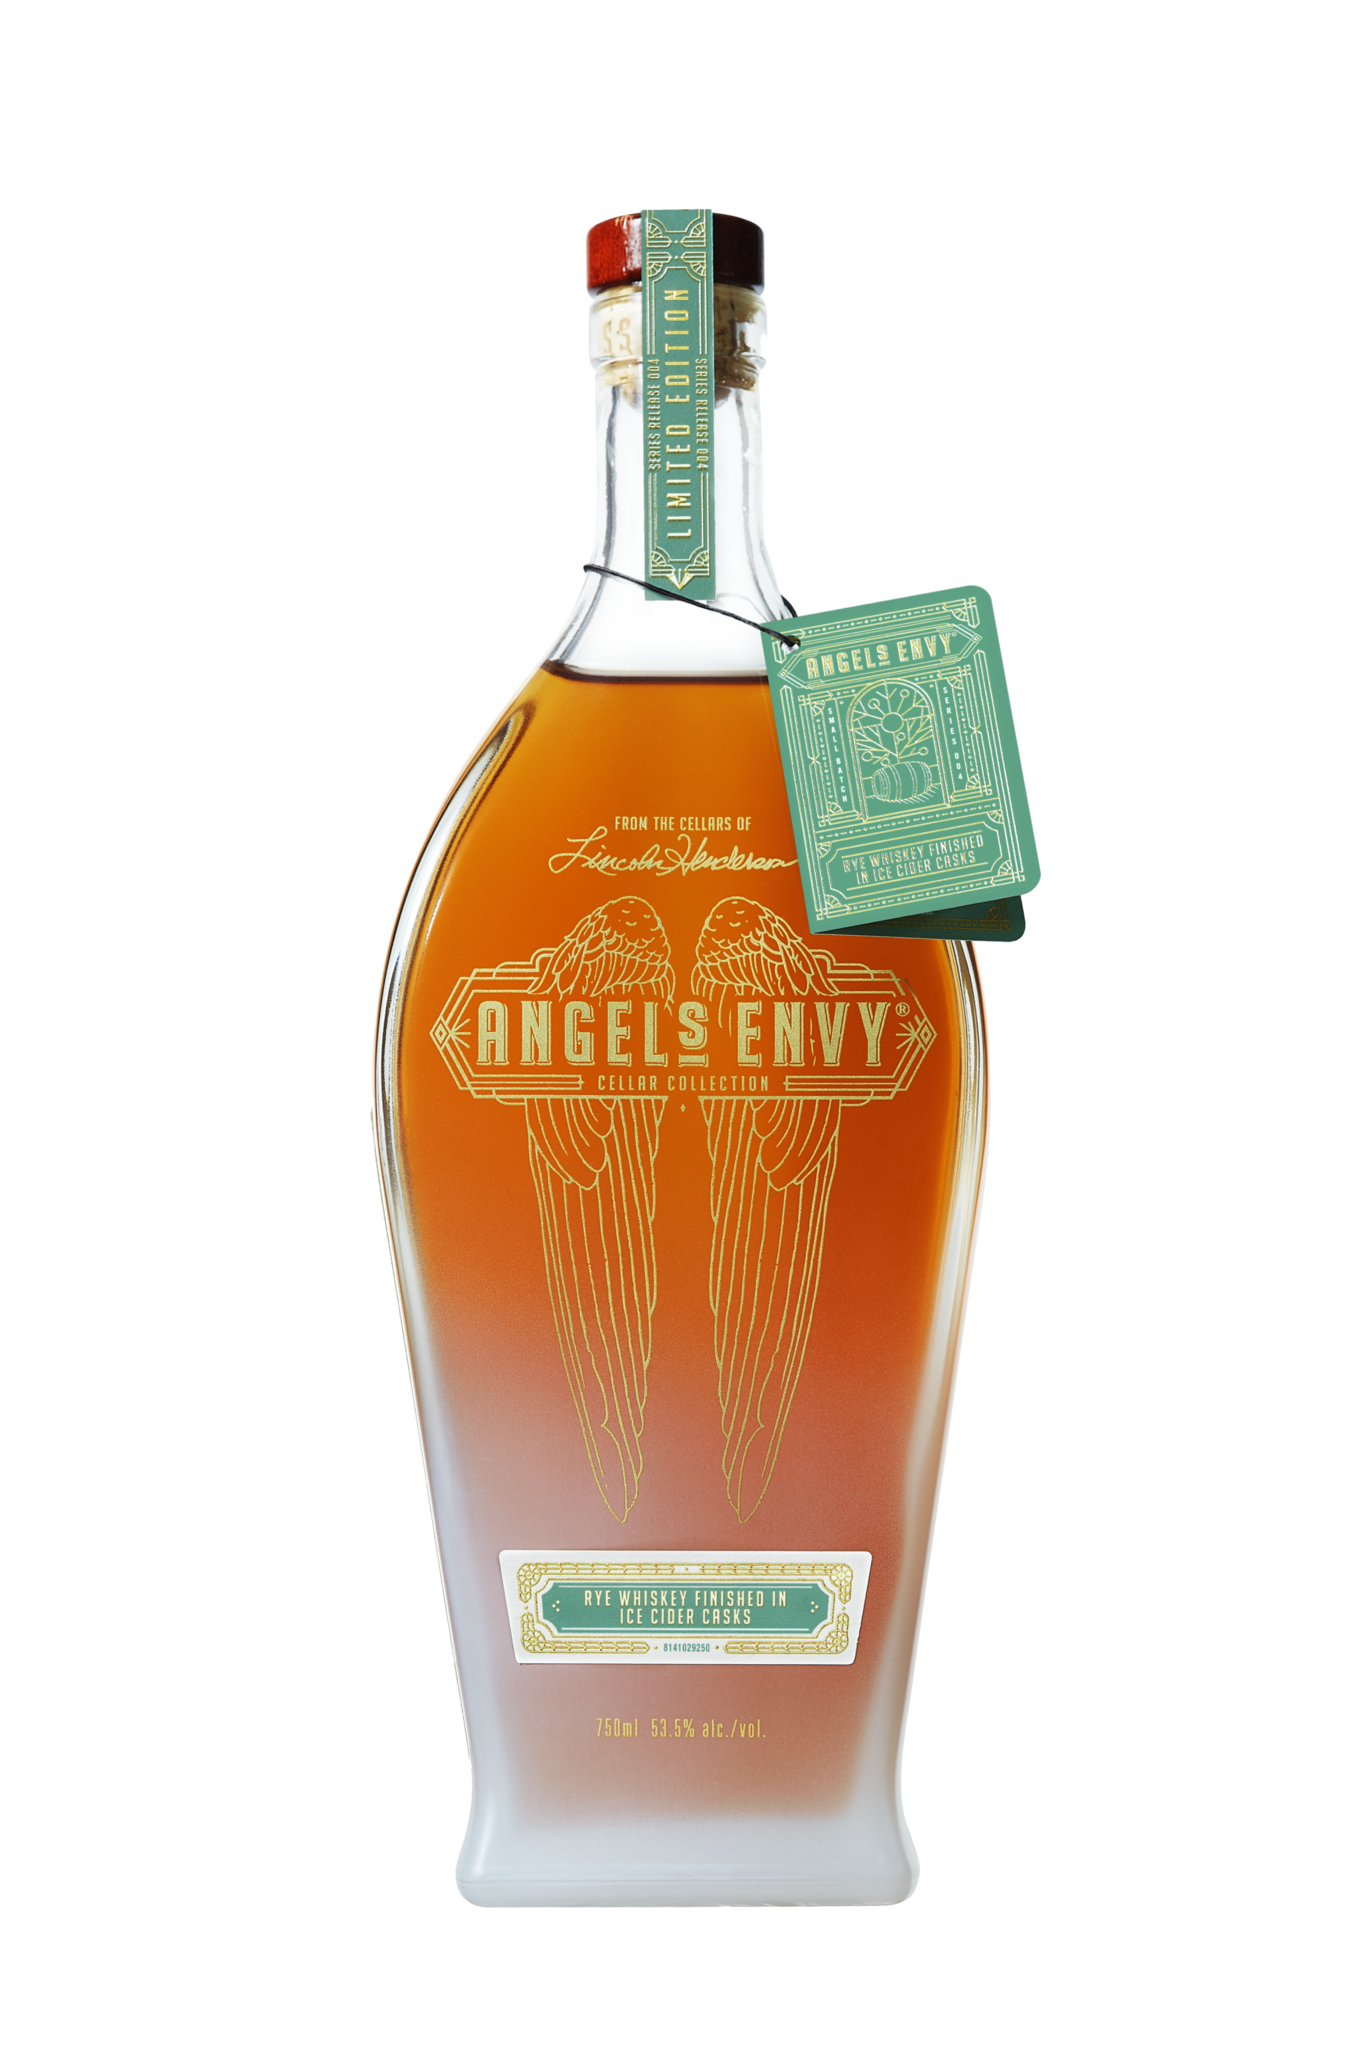 Angel's Envy Ice Cider Cask Finish Straight Rye Whiskey 750ml